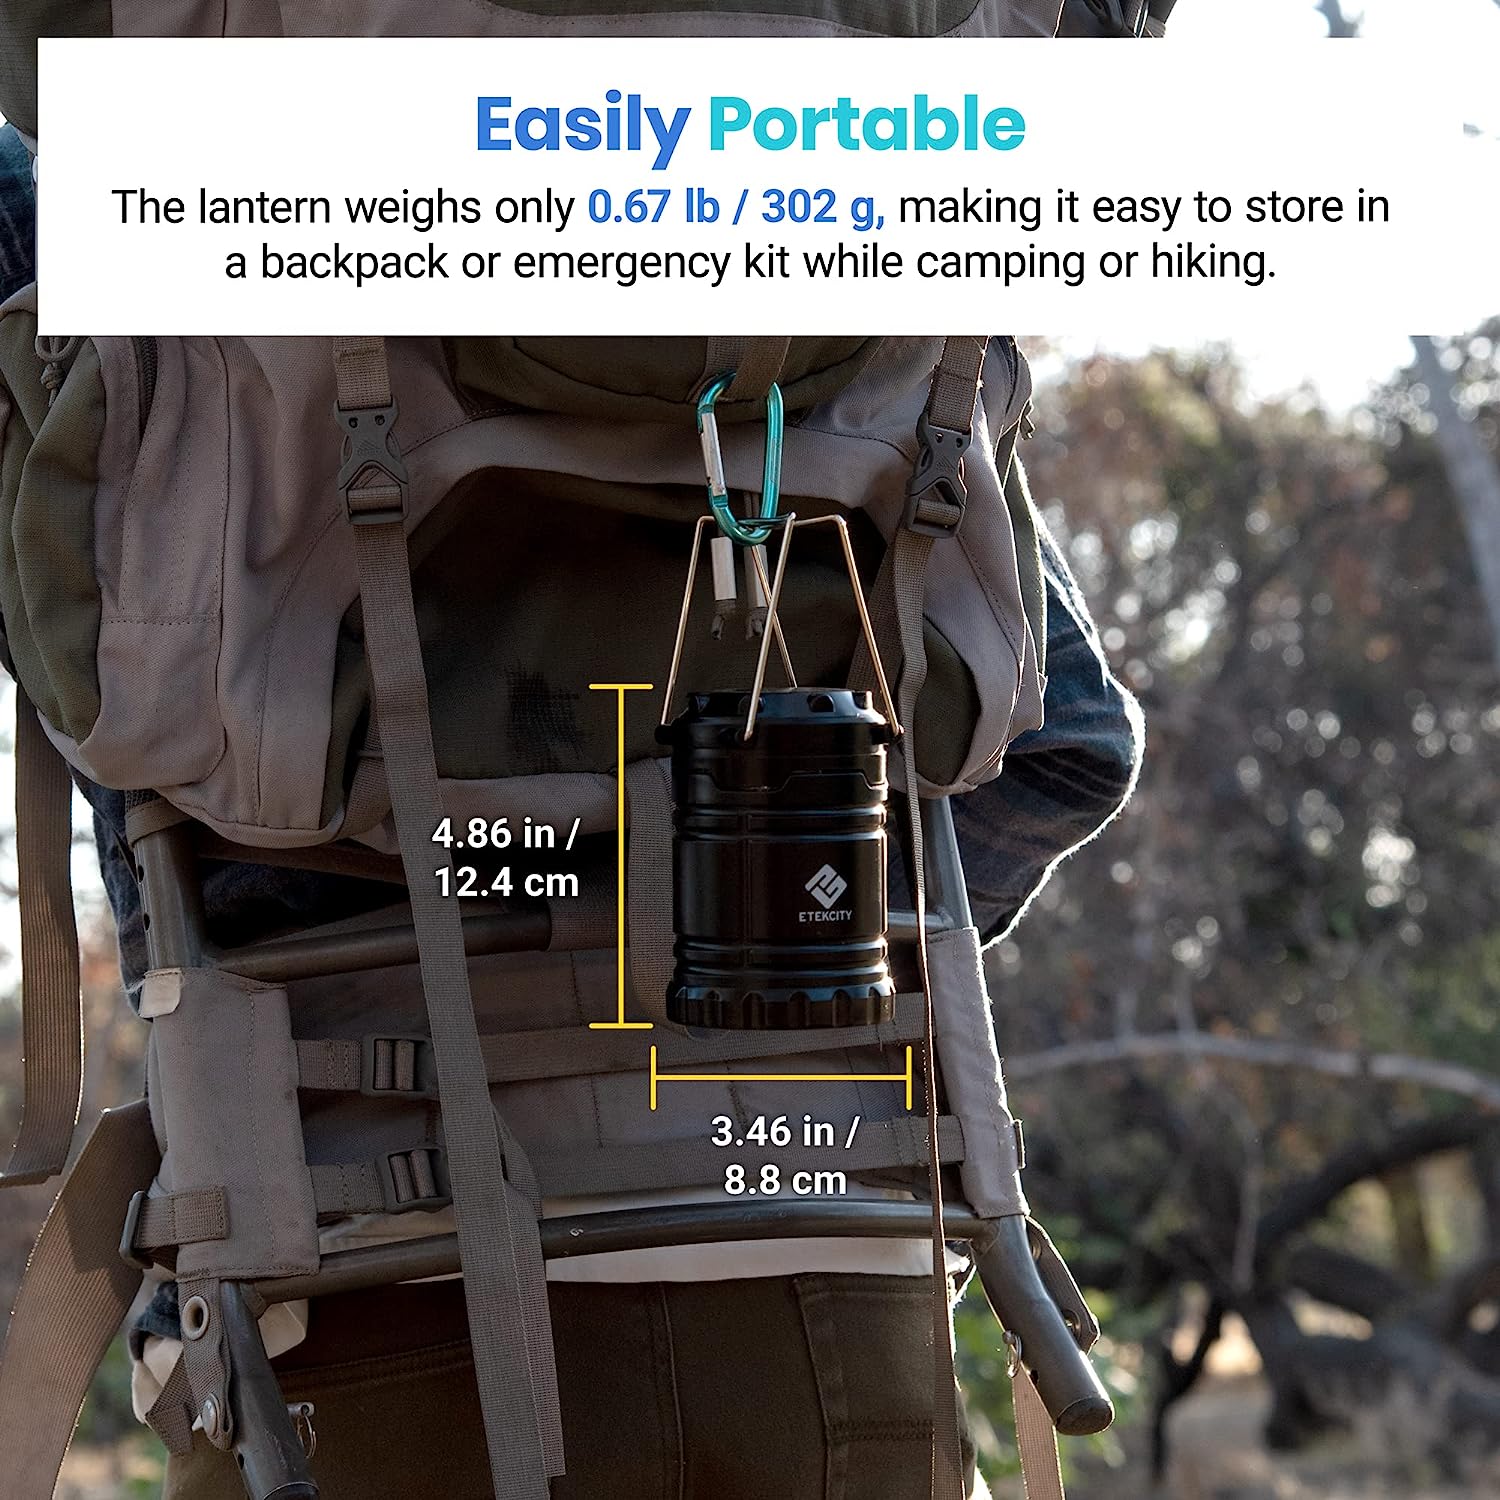 چراغ های فانوسی کمپینگ مدل Etekcity Lantern Camping - ارسال 10 الی 15 روز کاری